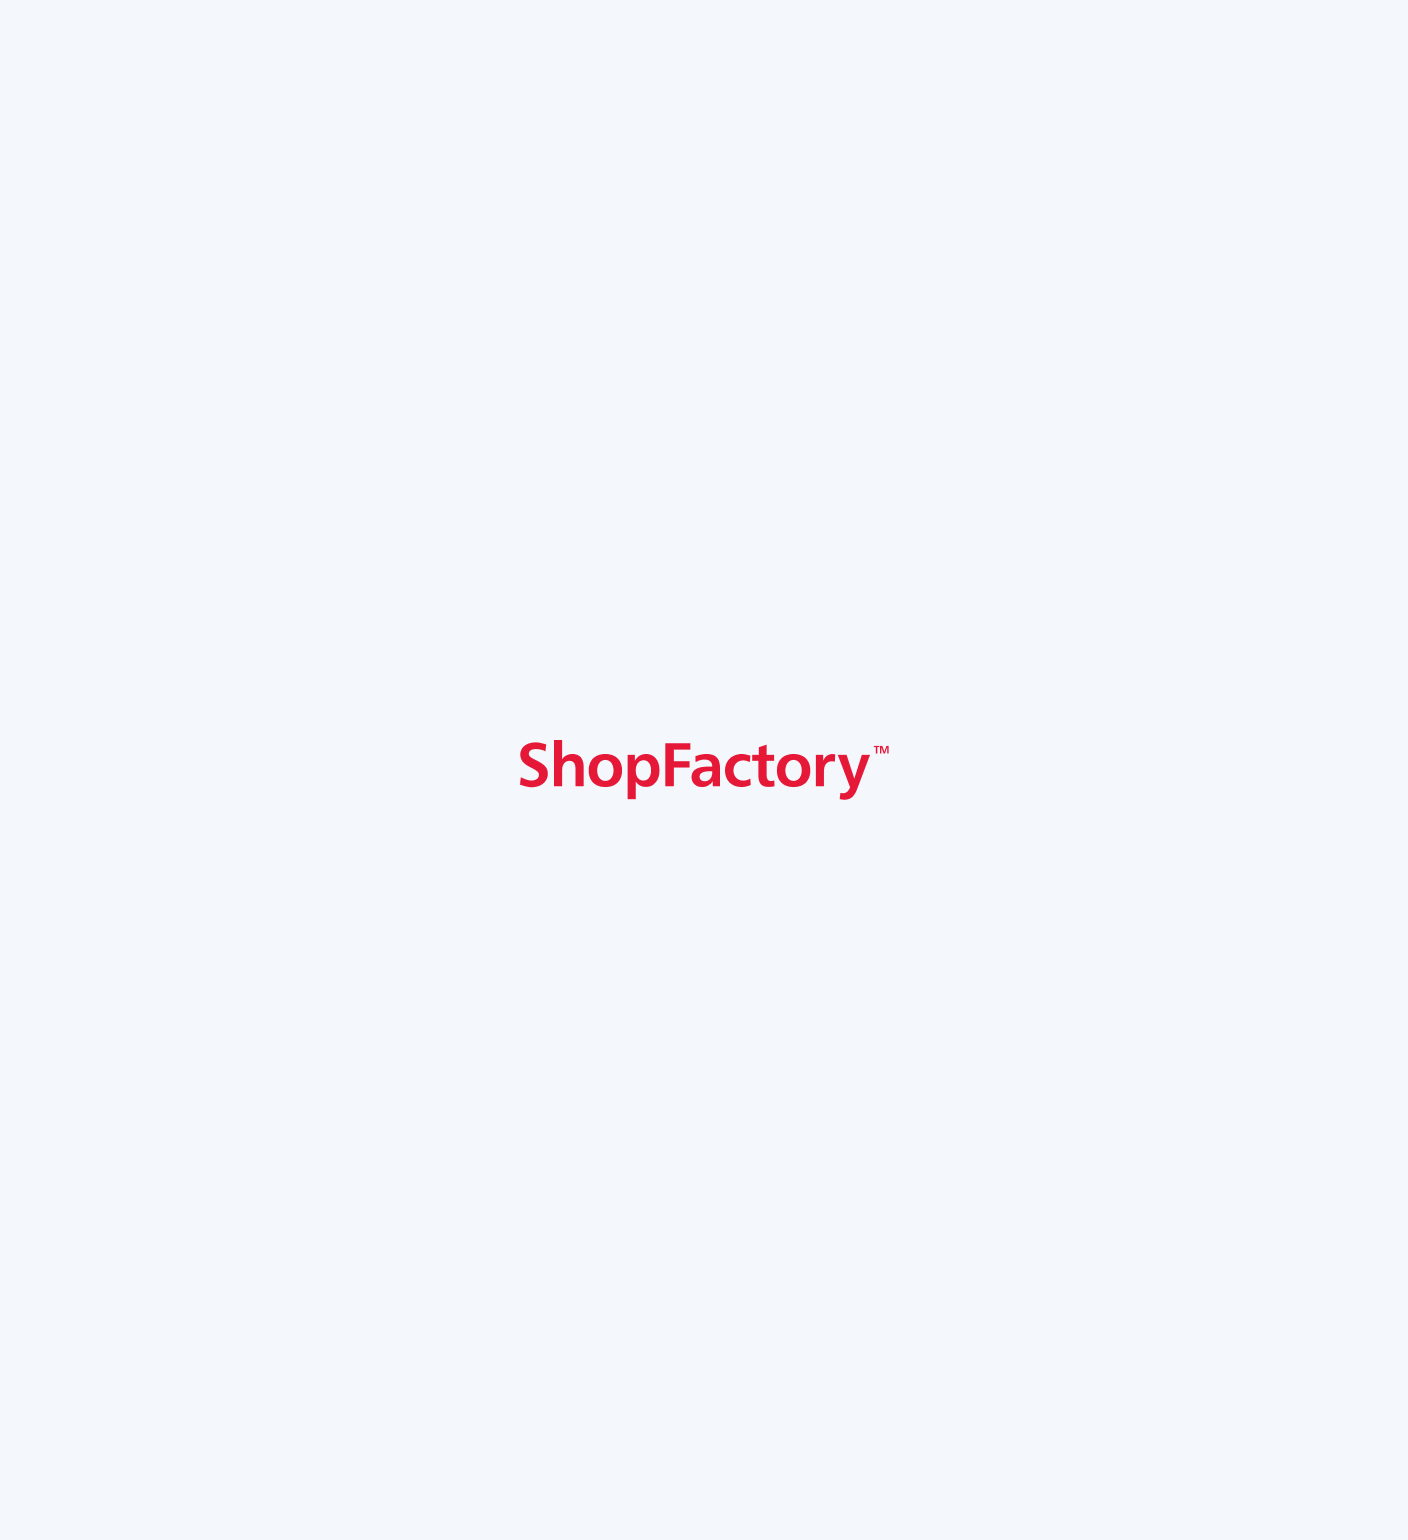 ShopFactory-1